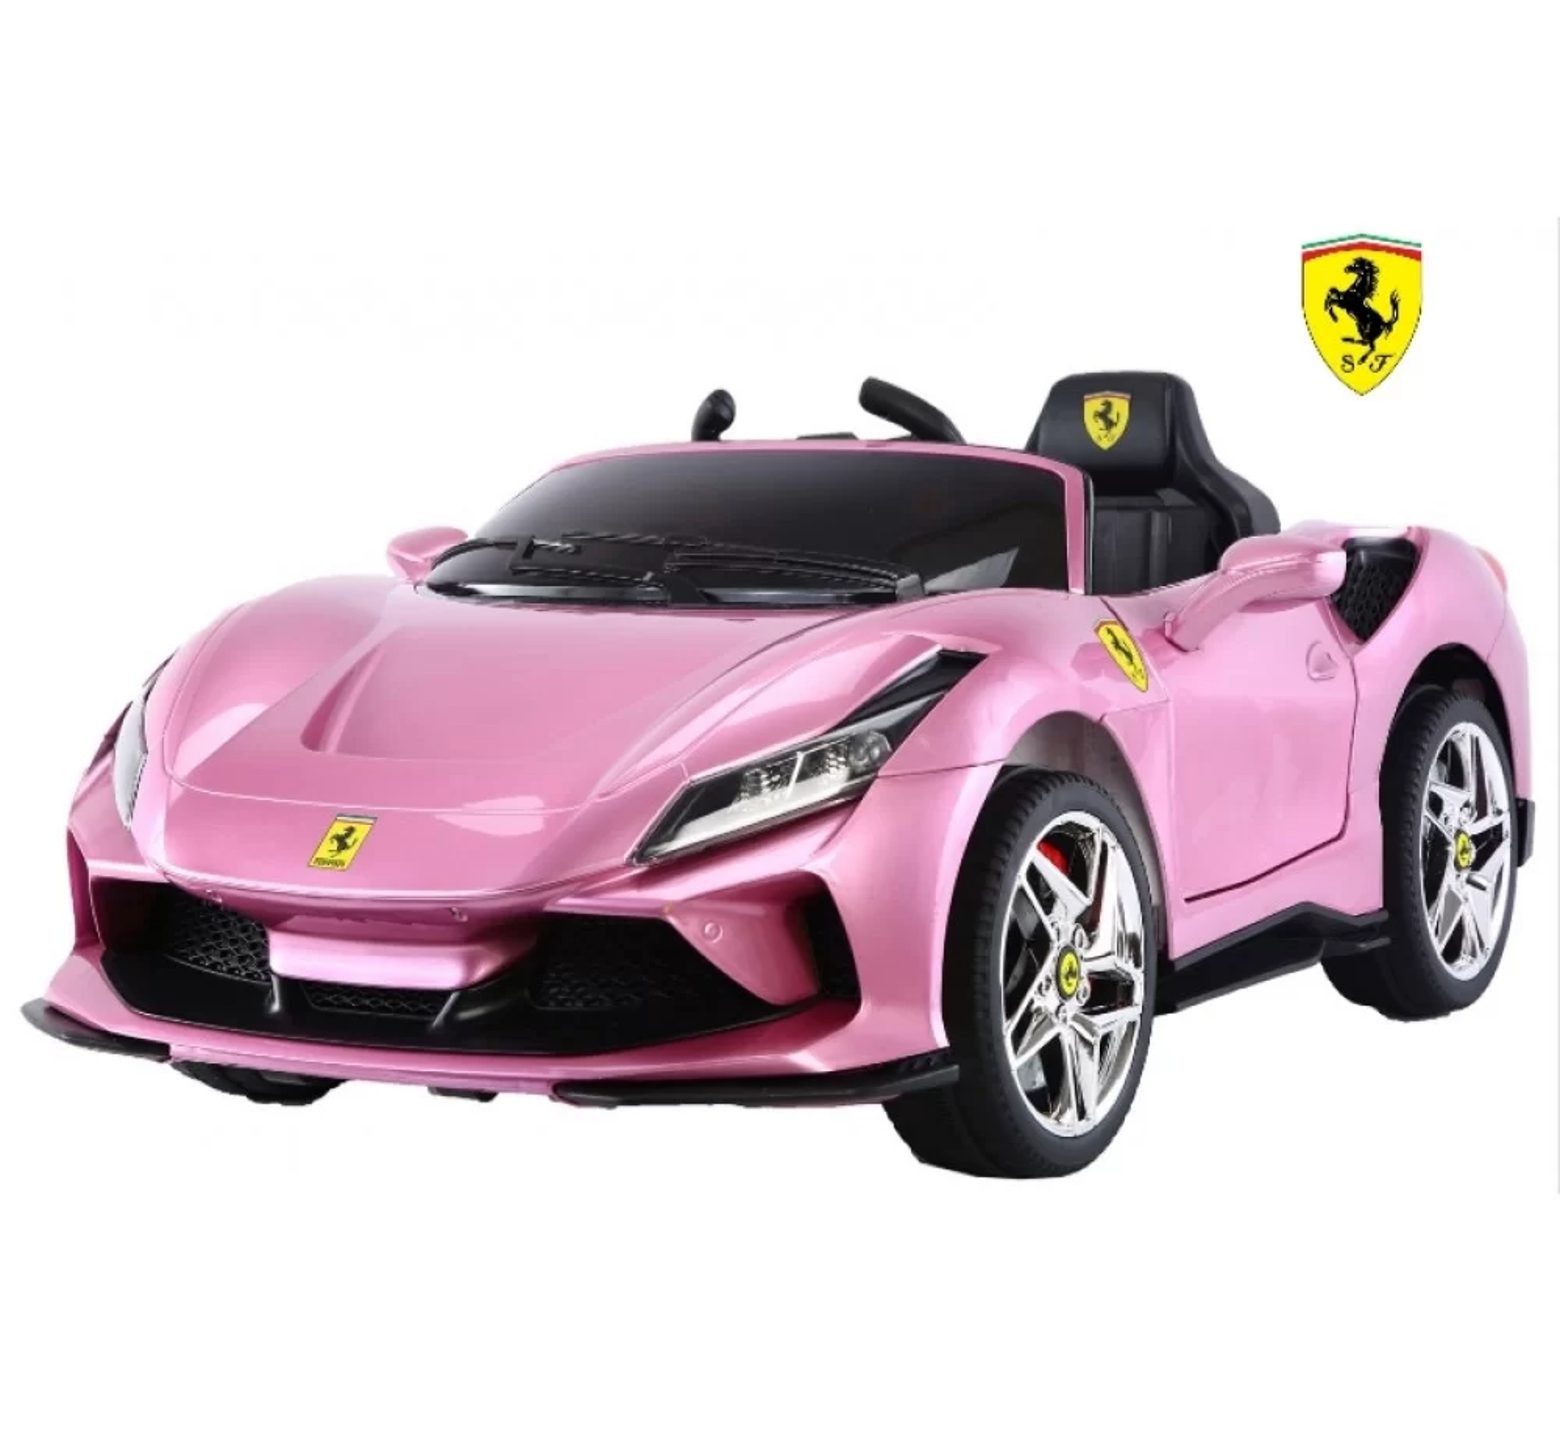 Ηλεκτροκίνητο Παιδικό Αυτοκίνητο 12V Licensed Ferrari με 4 μοτέρ σε ροζ χρώμα